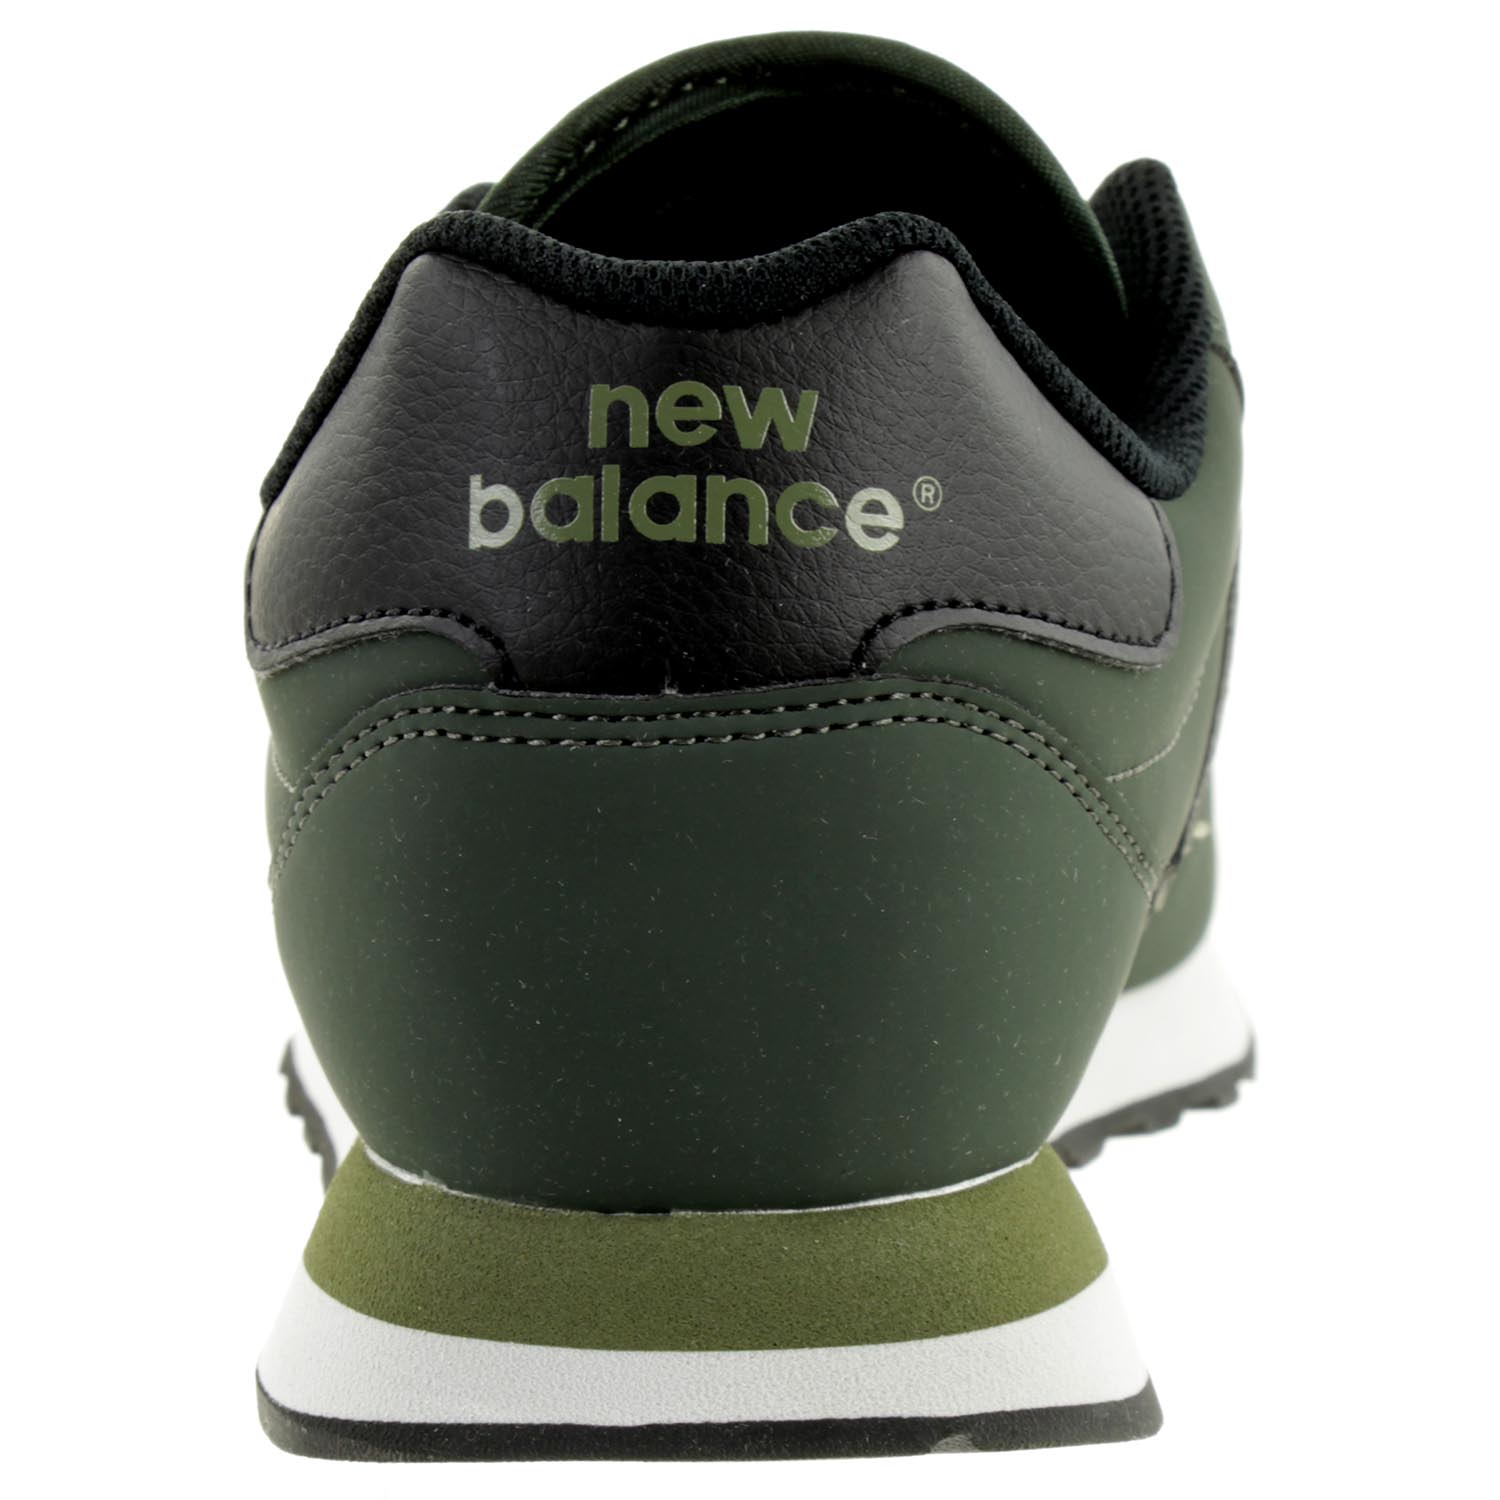 New Balance GM500 LD1 Lifestyle Sneaker Herren Turnschuhe grün